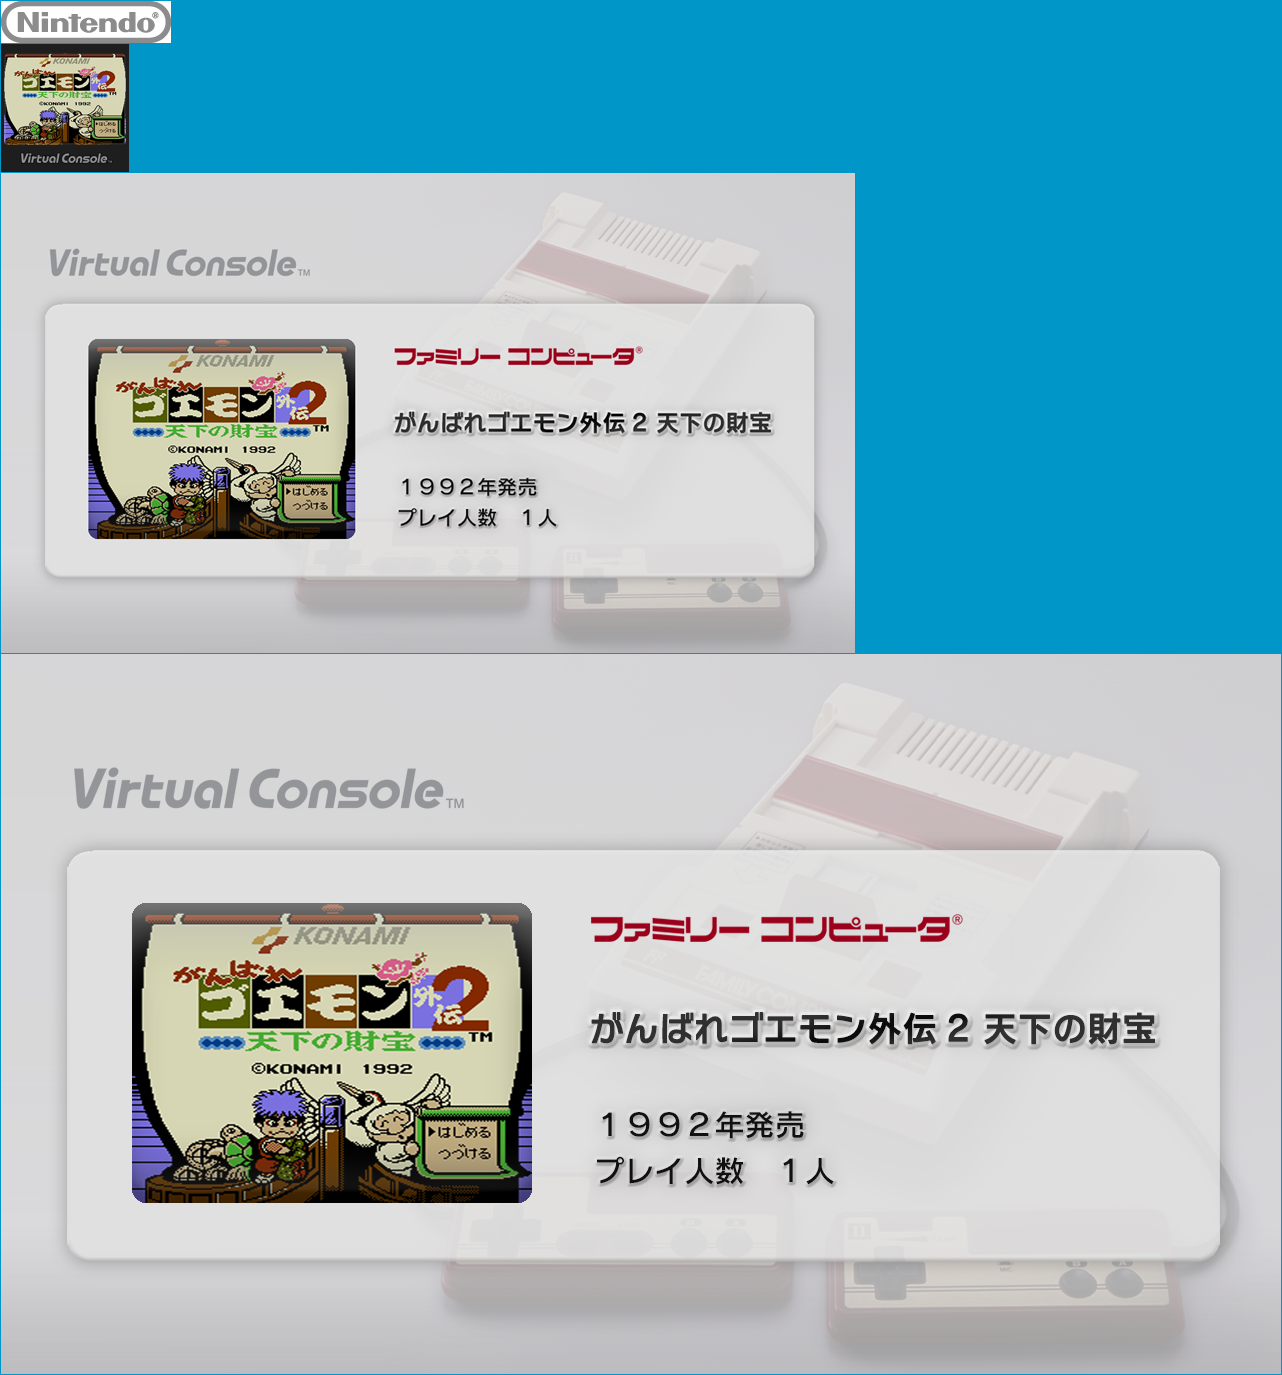 Virtual Console - Ganbare Goemon Gaiden 2: Tenka no Zaihō